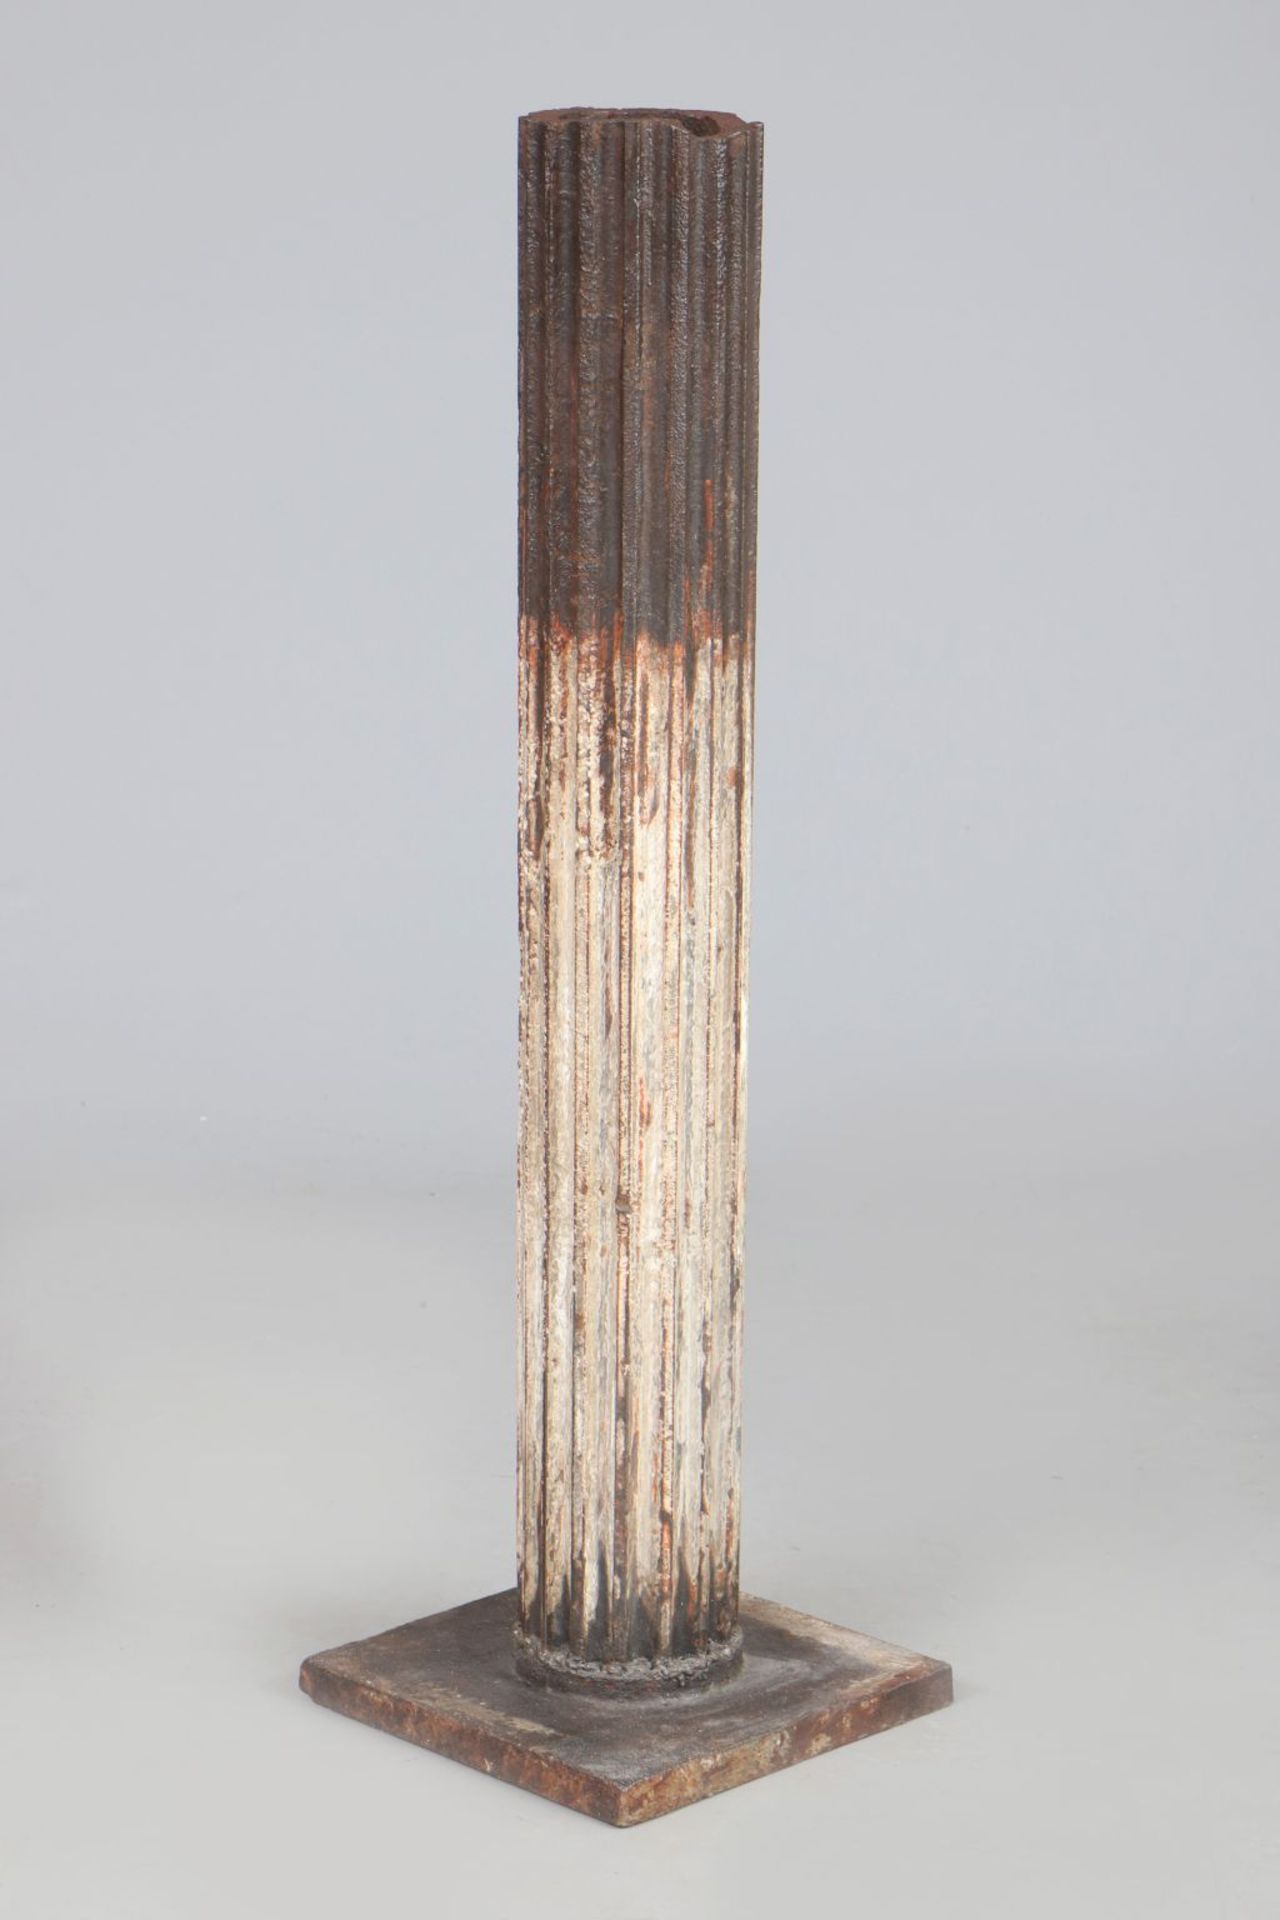 Eisen-Säule/Piedestalkannelierte, hohe Säule auf eckigem Stand, H ca. 120cm, Rost-Patina, im<